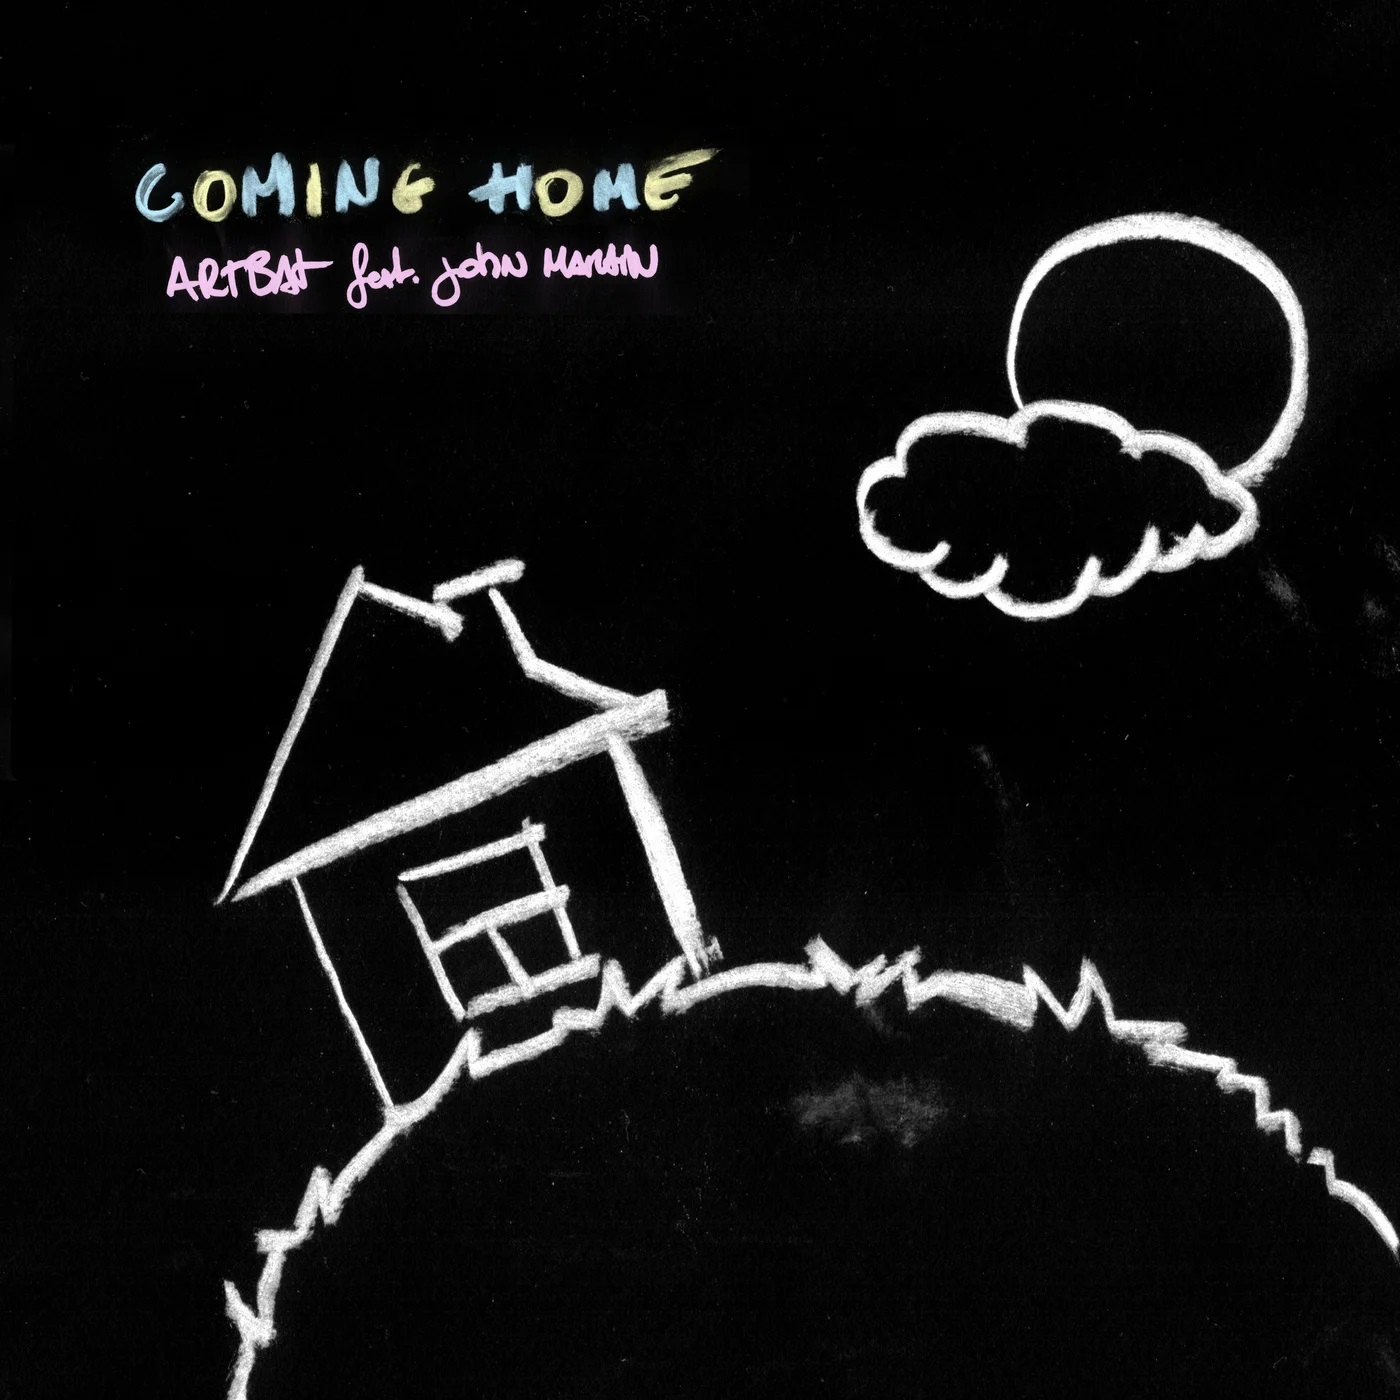 Artbat - Coming Home (feat. John Martin) (Original Club Mix)